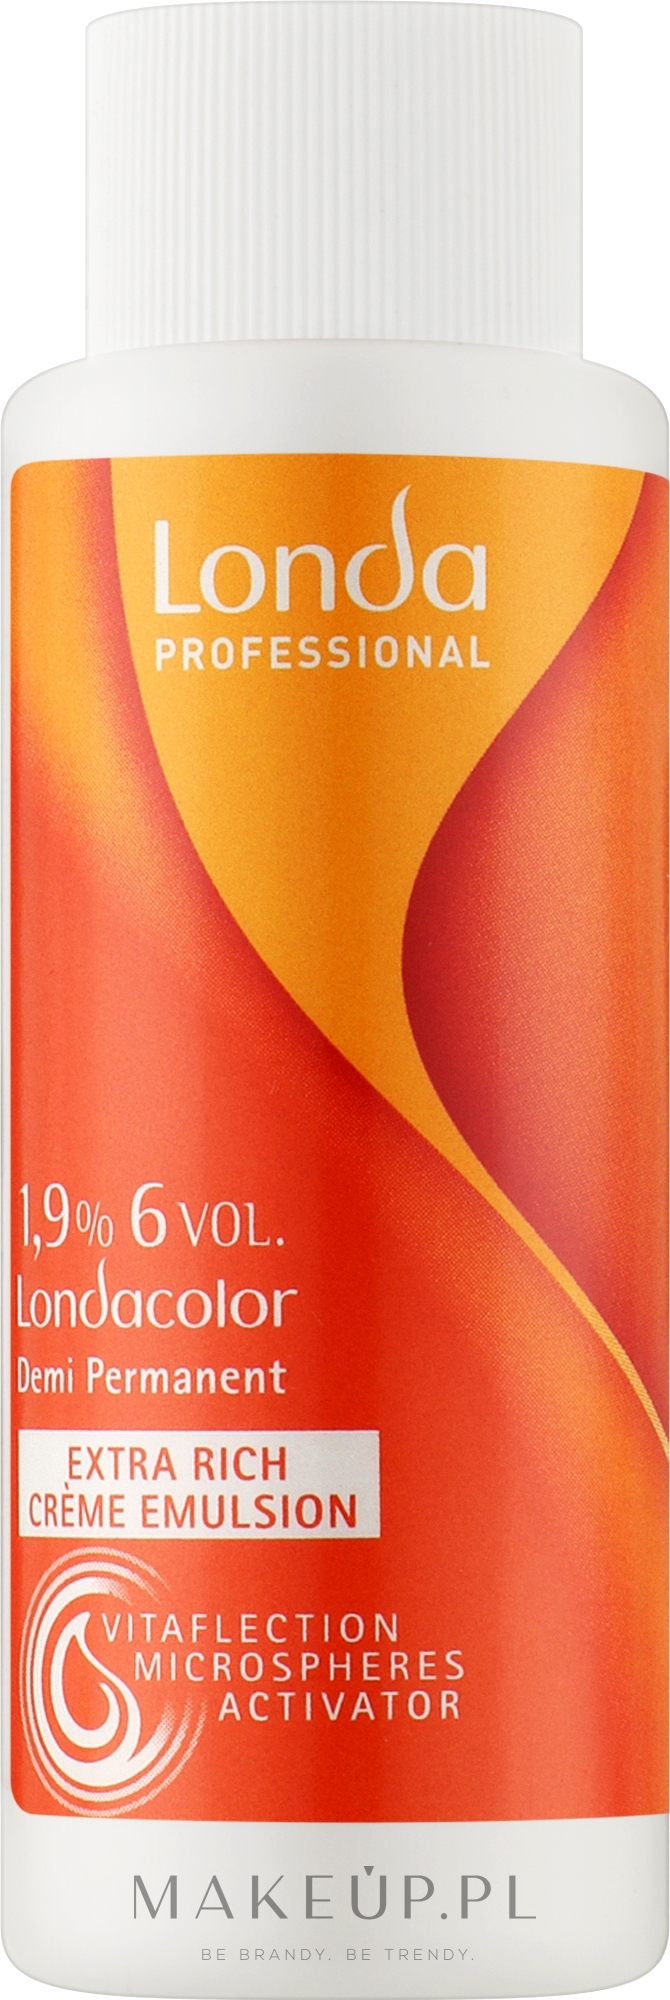 Kremowa emulsja utleniająca 1,9% (6 vol.) - Londa Professional Londacolor — Zdjęcie 60 ml